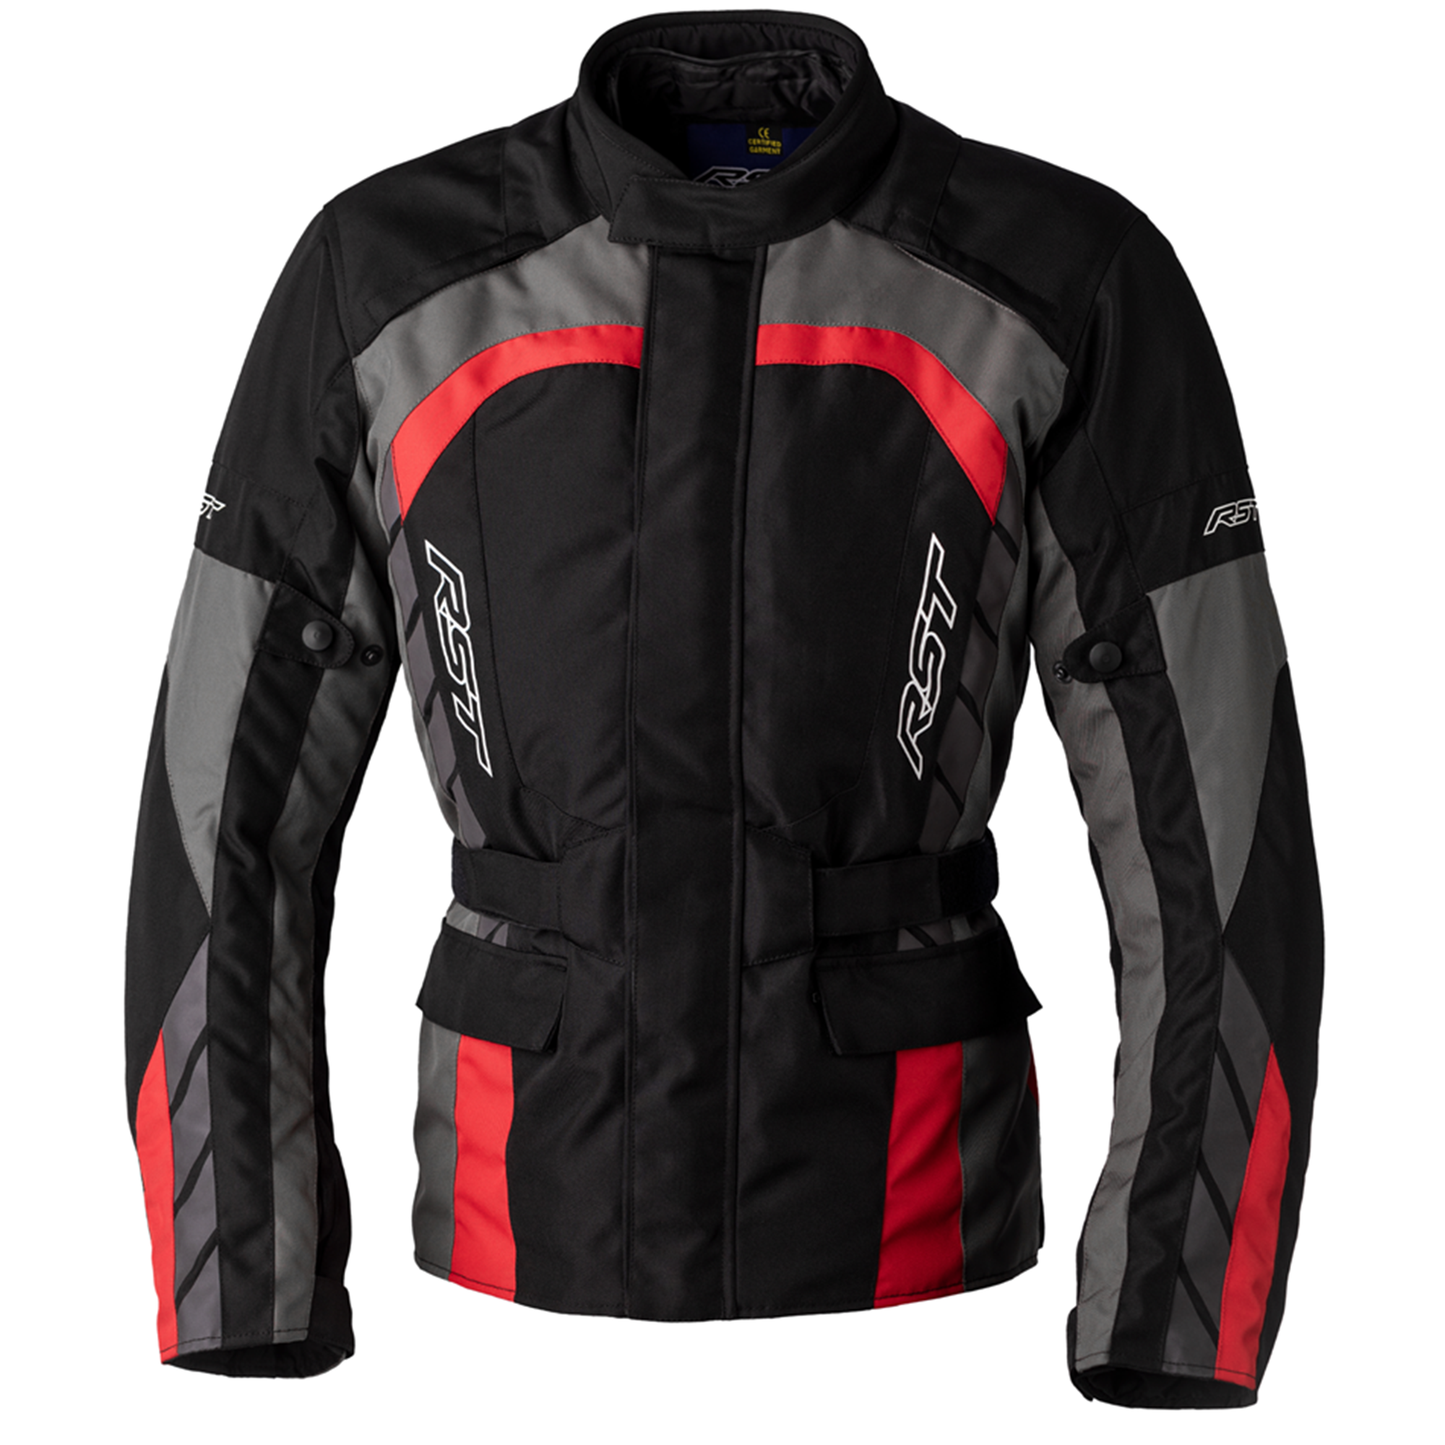 RST Alpha 5 Textile Jacket - Black/Red (3028)